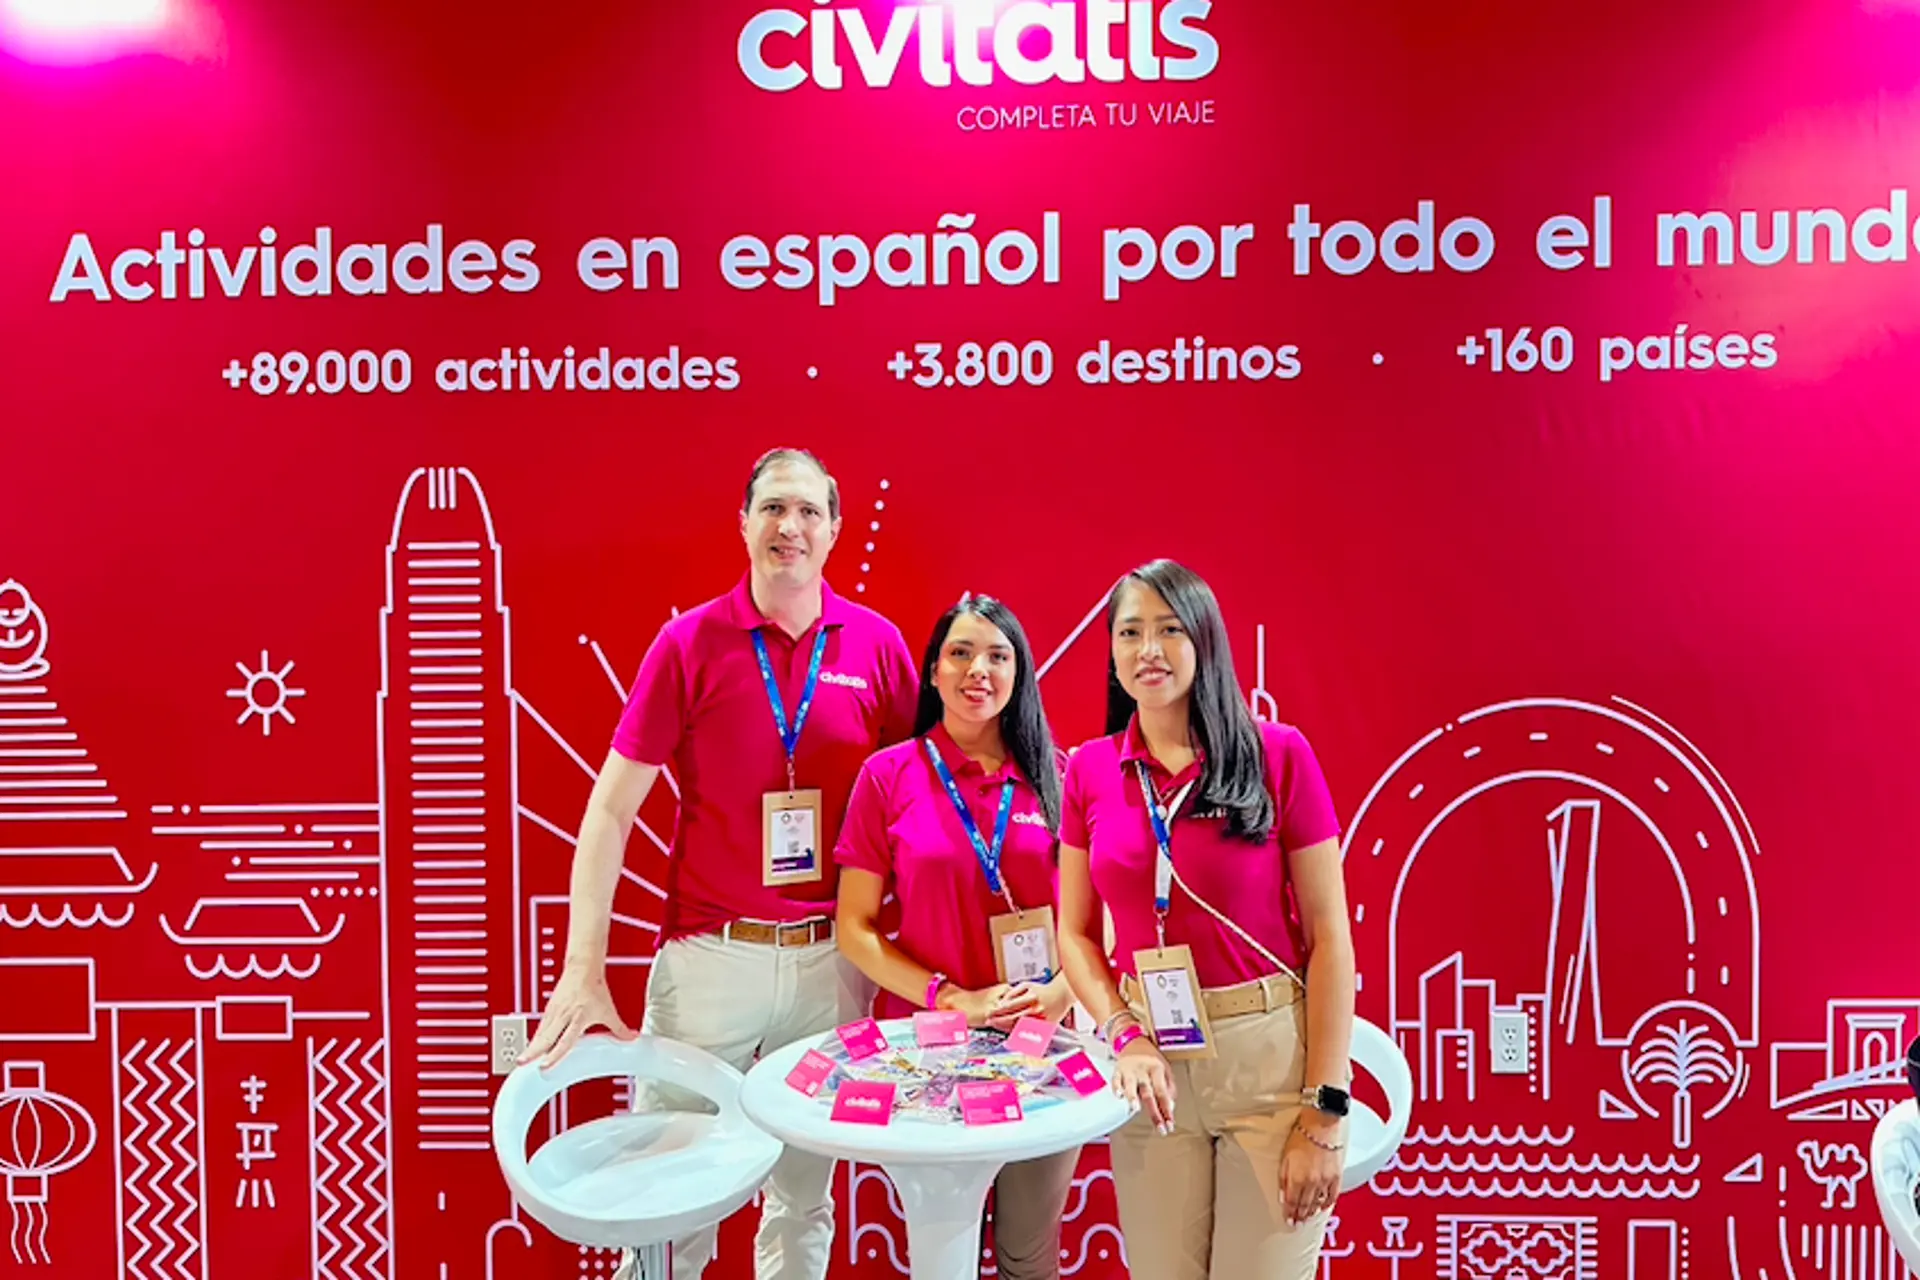 Civitatis alcanza el millón de viajeros mexicanos en su plataforma